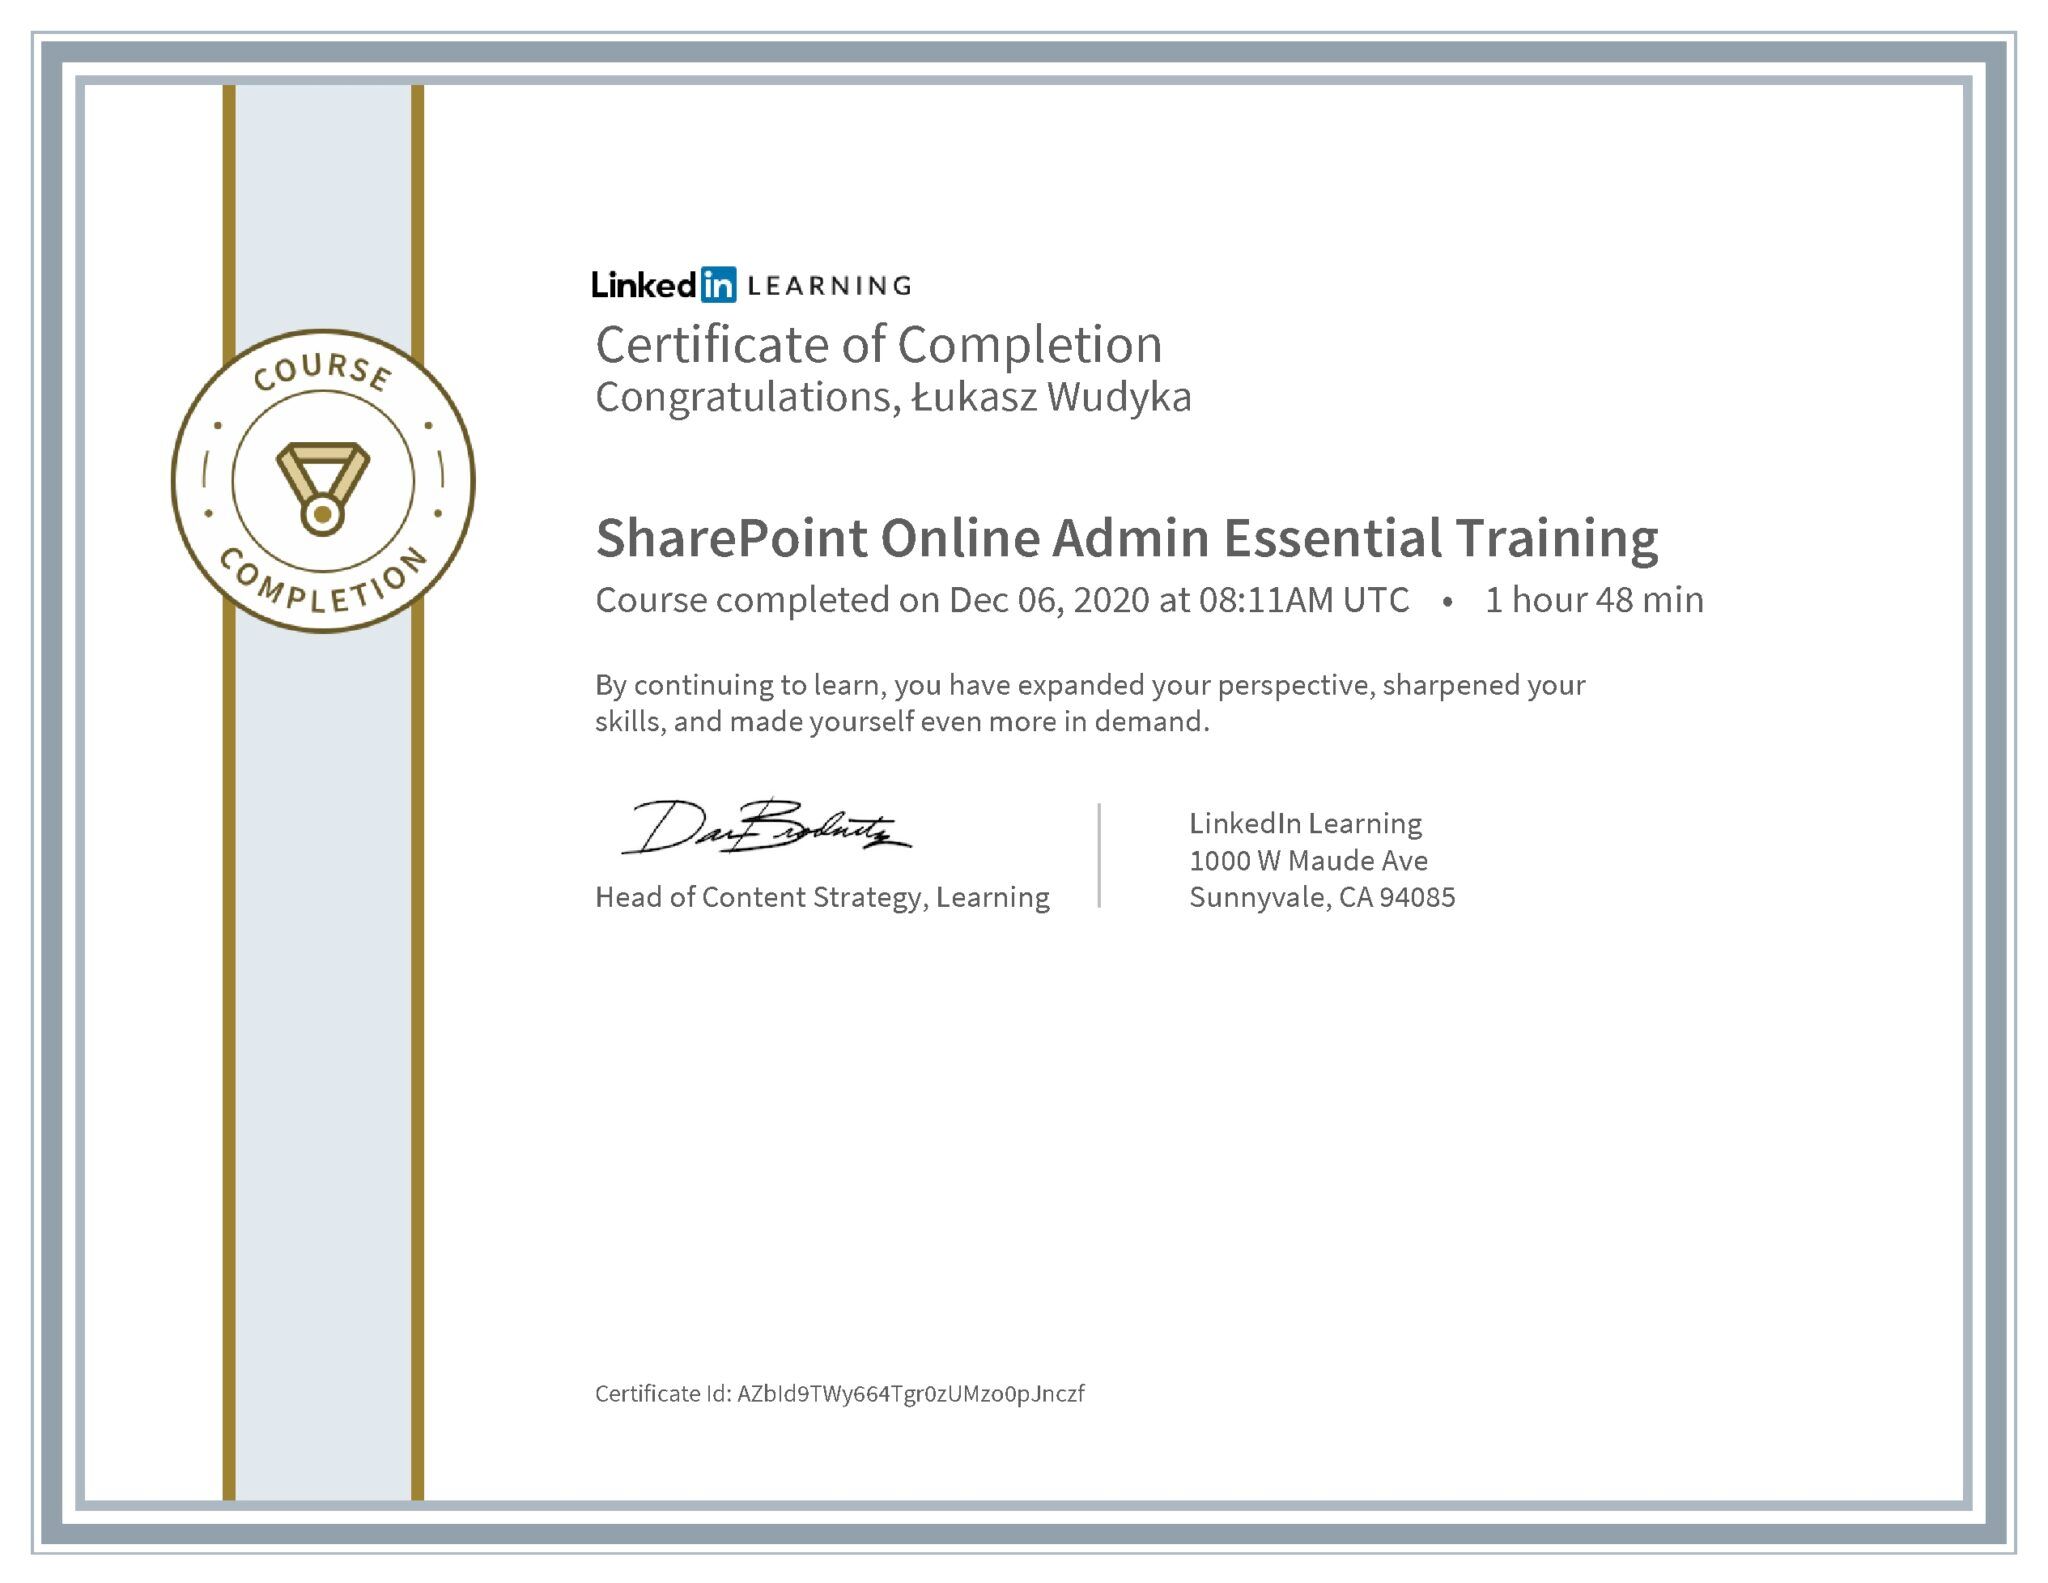 Łukasz Wudyka certyfikat LinkedIn SharePoint Online Admin Essential Training